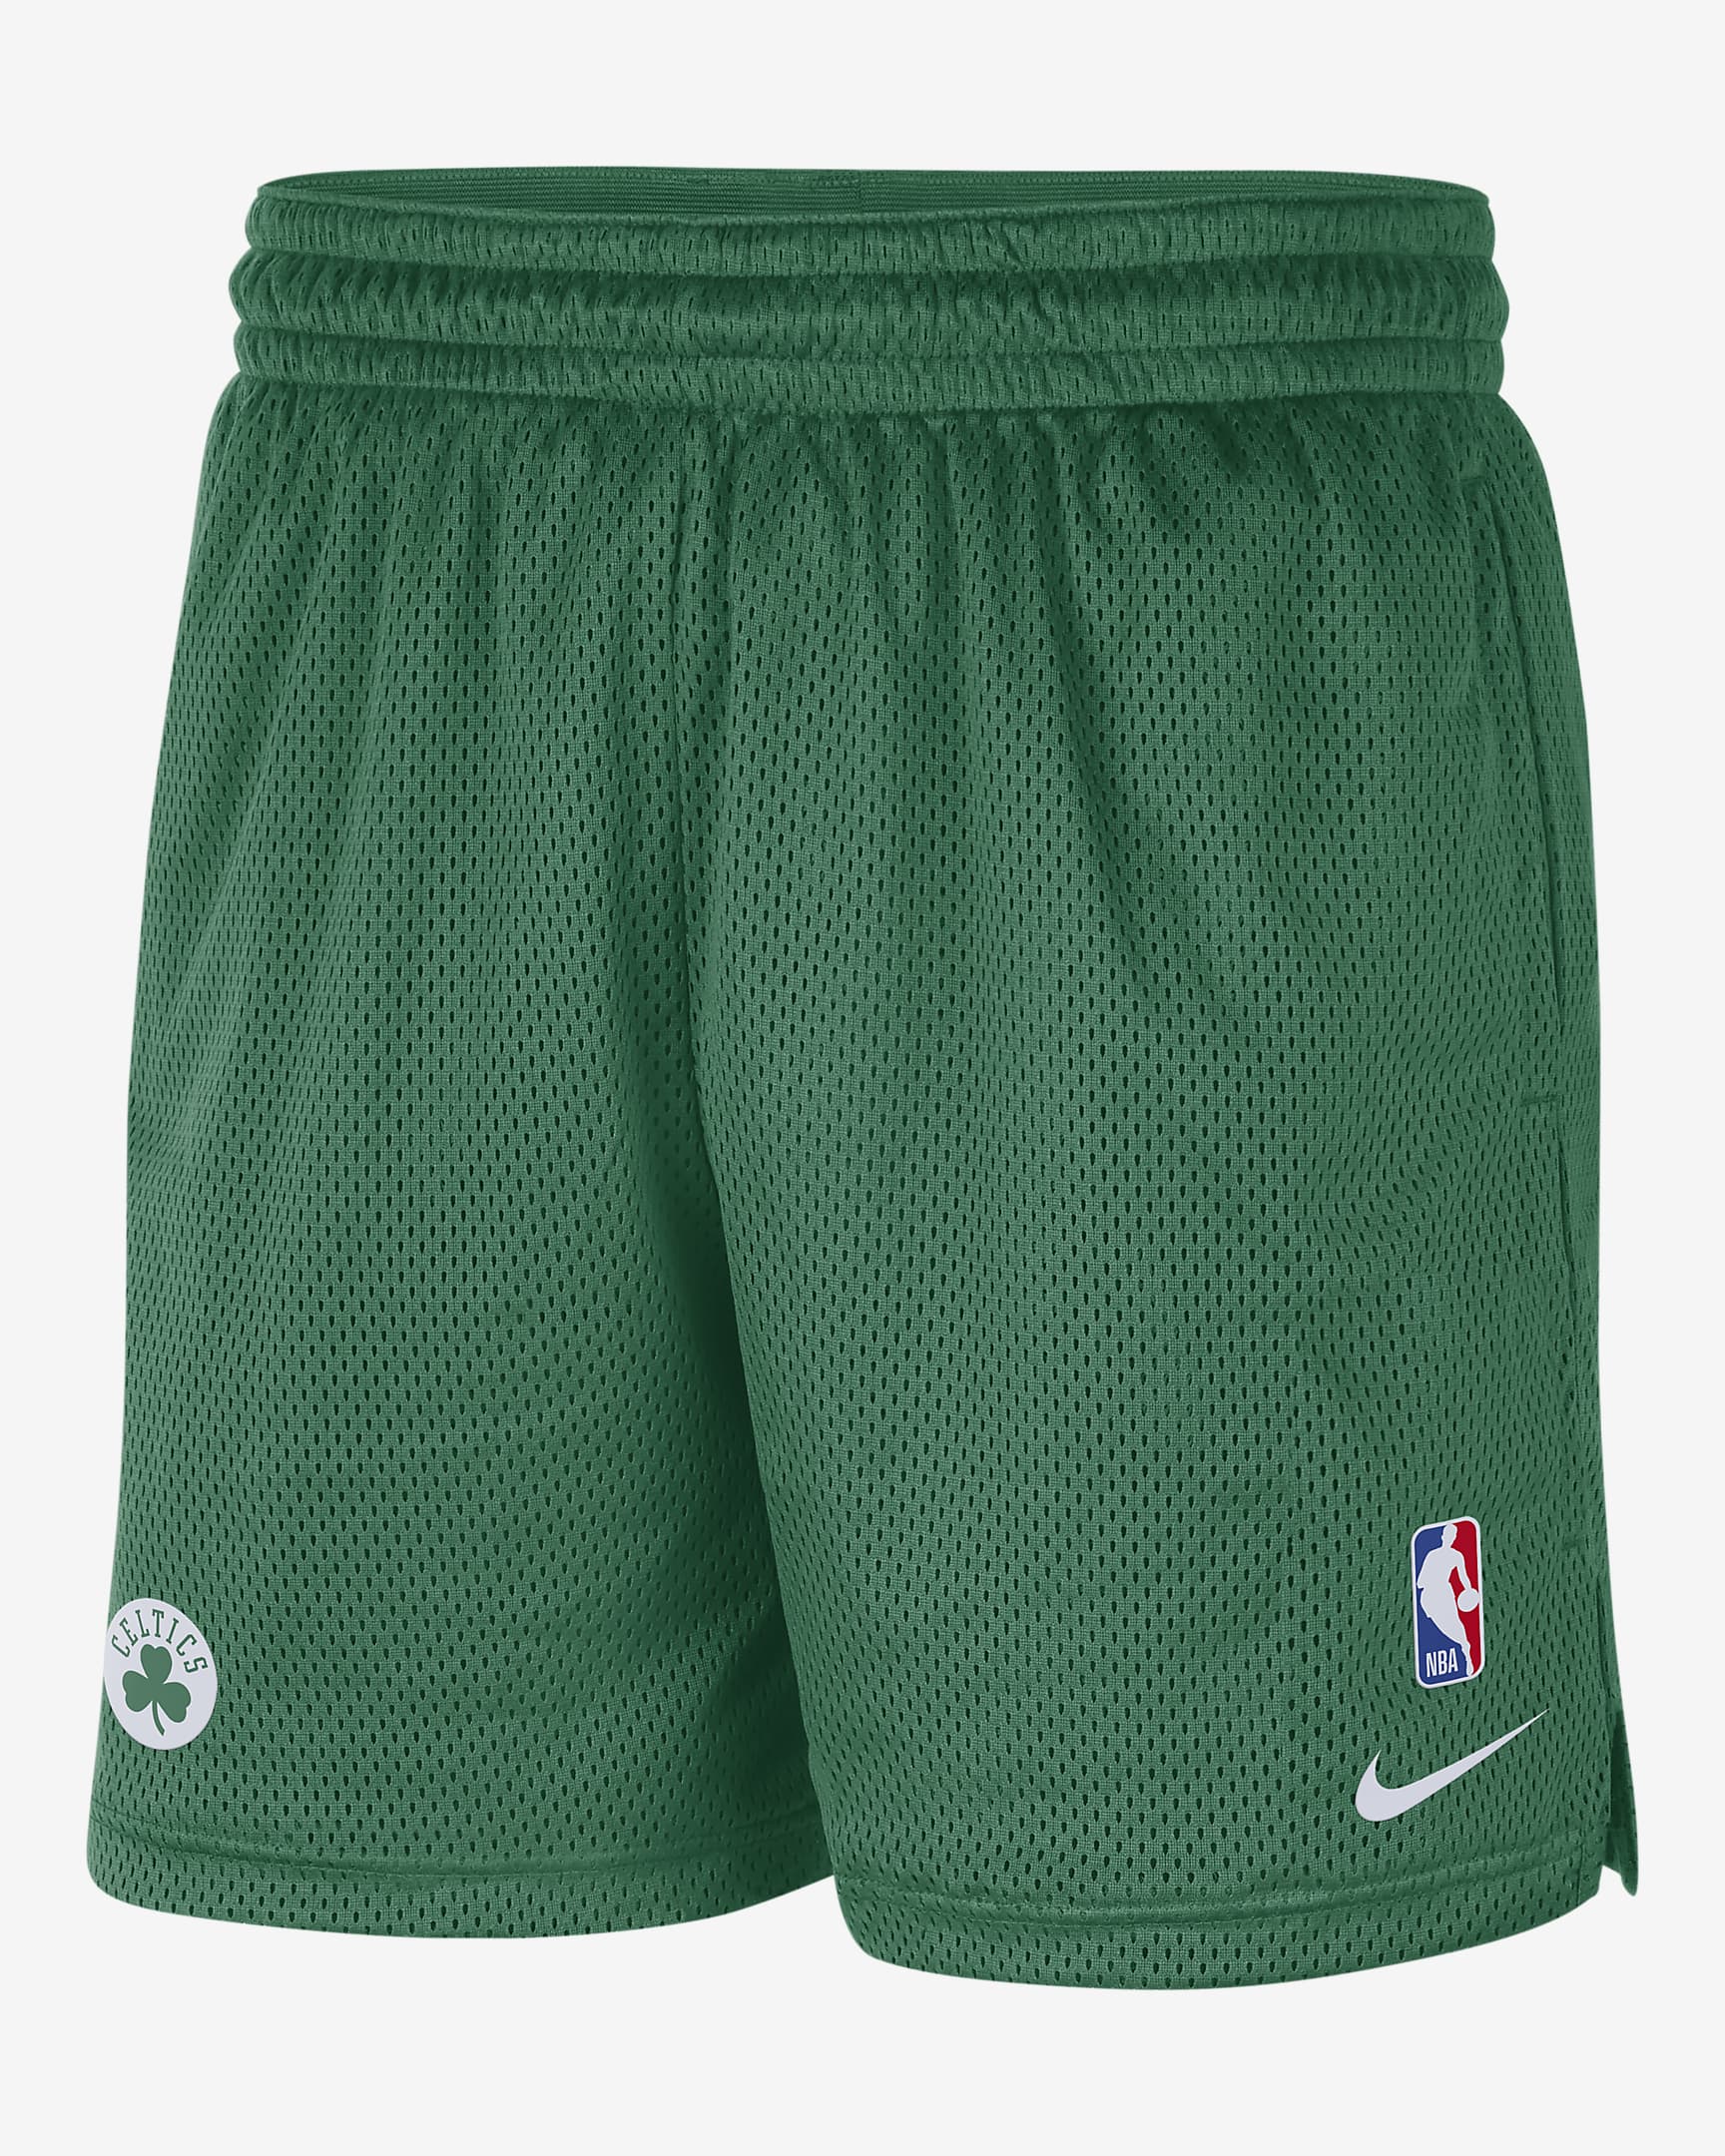 Boston Celtics Men's Nike NBA Shorts. Nike.com